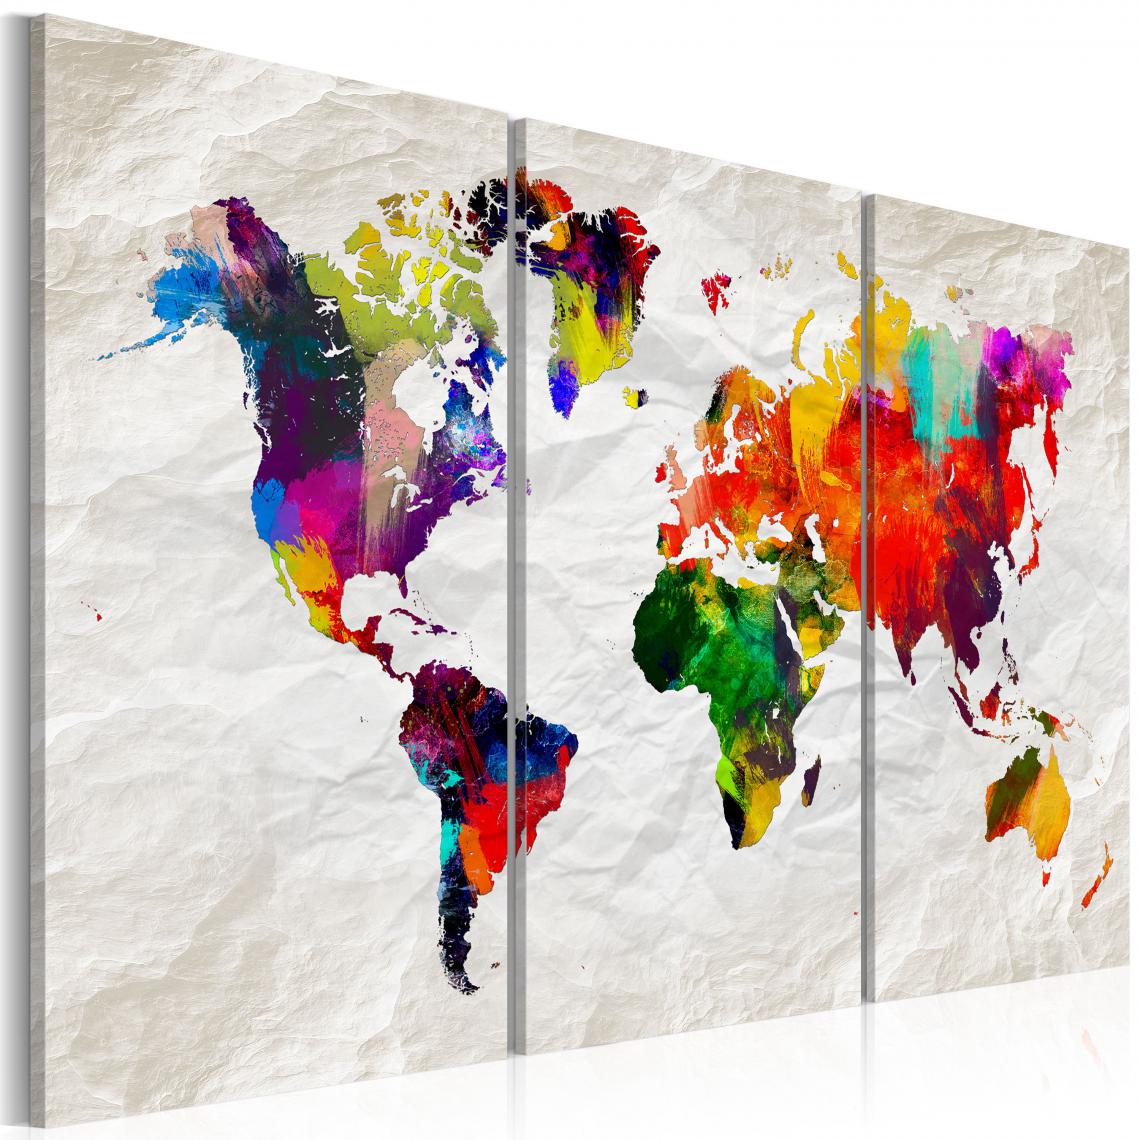 Decoshop26 - Tableau sur toile en 3 panneaux décoration murale image imprimée cadre en bois à suspendre Carte du monde : Rainbow Madness II 120x80 cm 11_0004525 - Tableaux, peintures